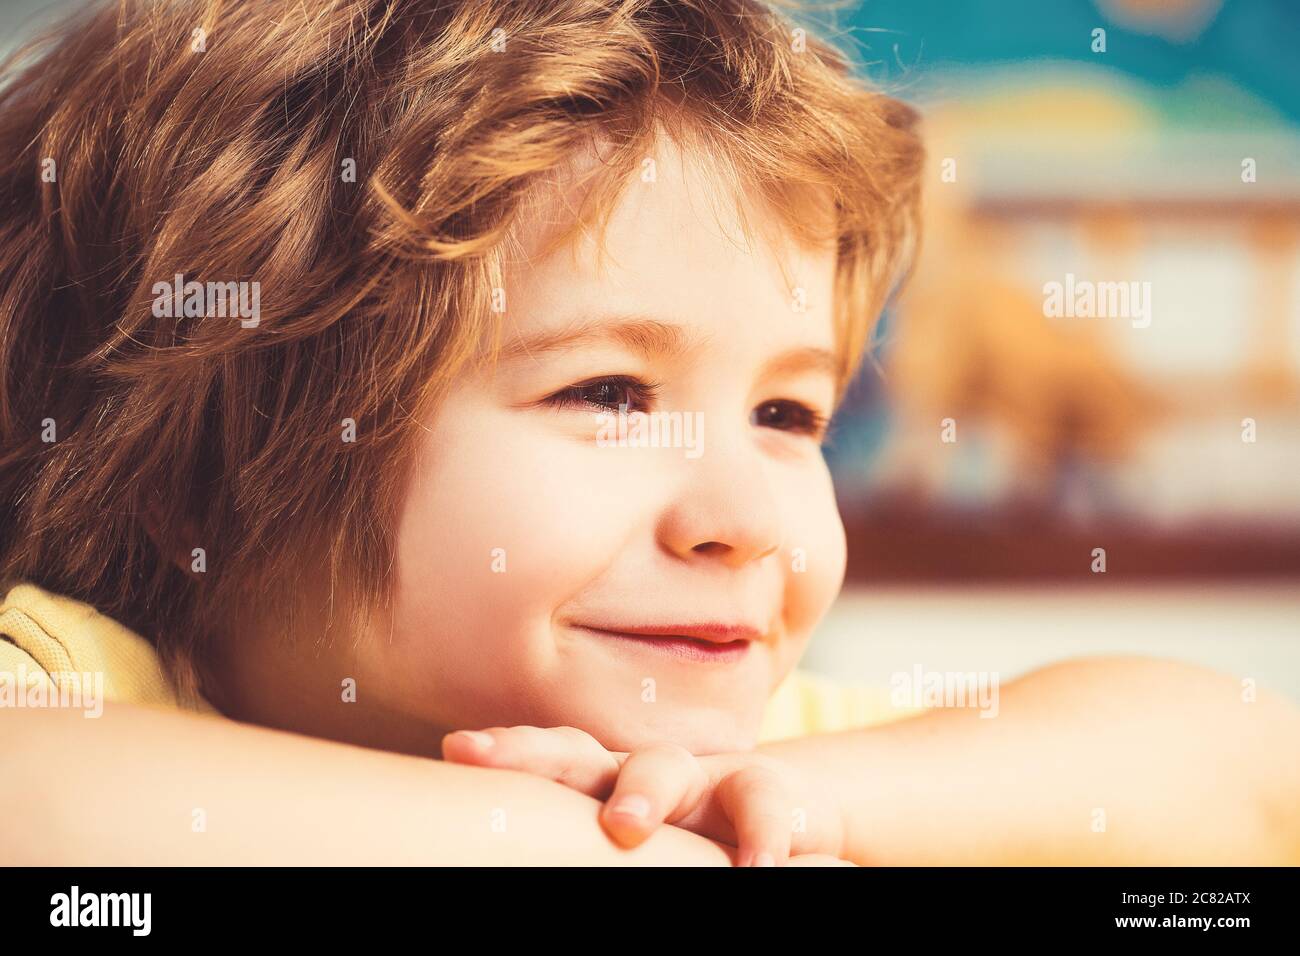 Porträt eines niedlichen kleinen amerikanischen Jungen lächelnd. Nahaufnahme. Stockfoto